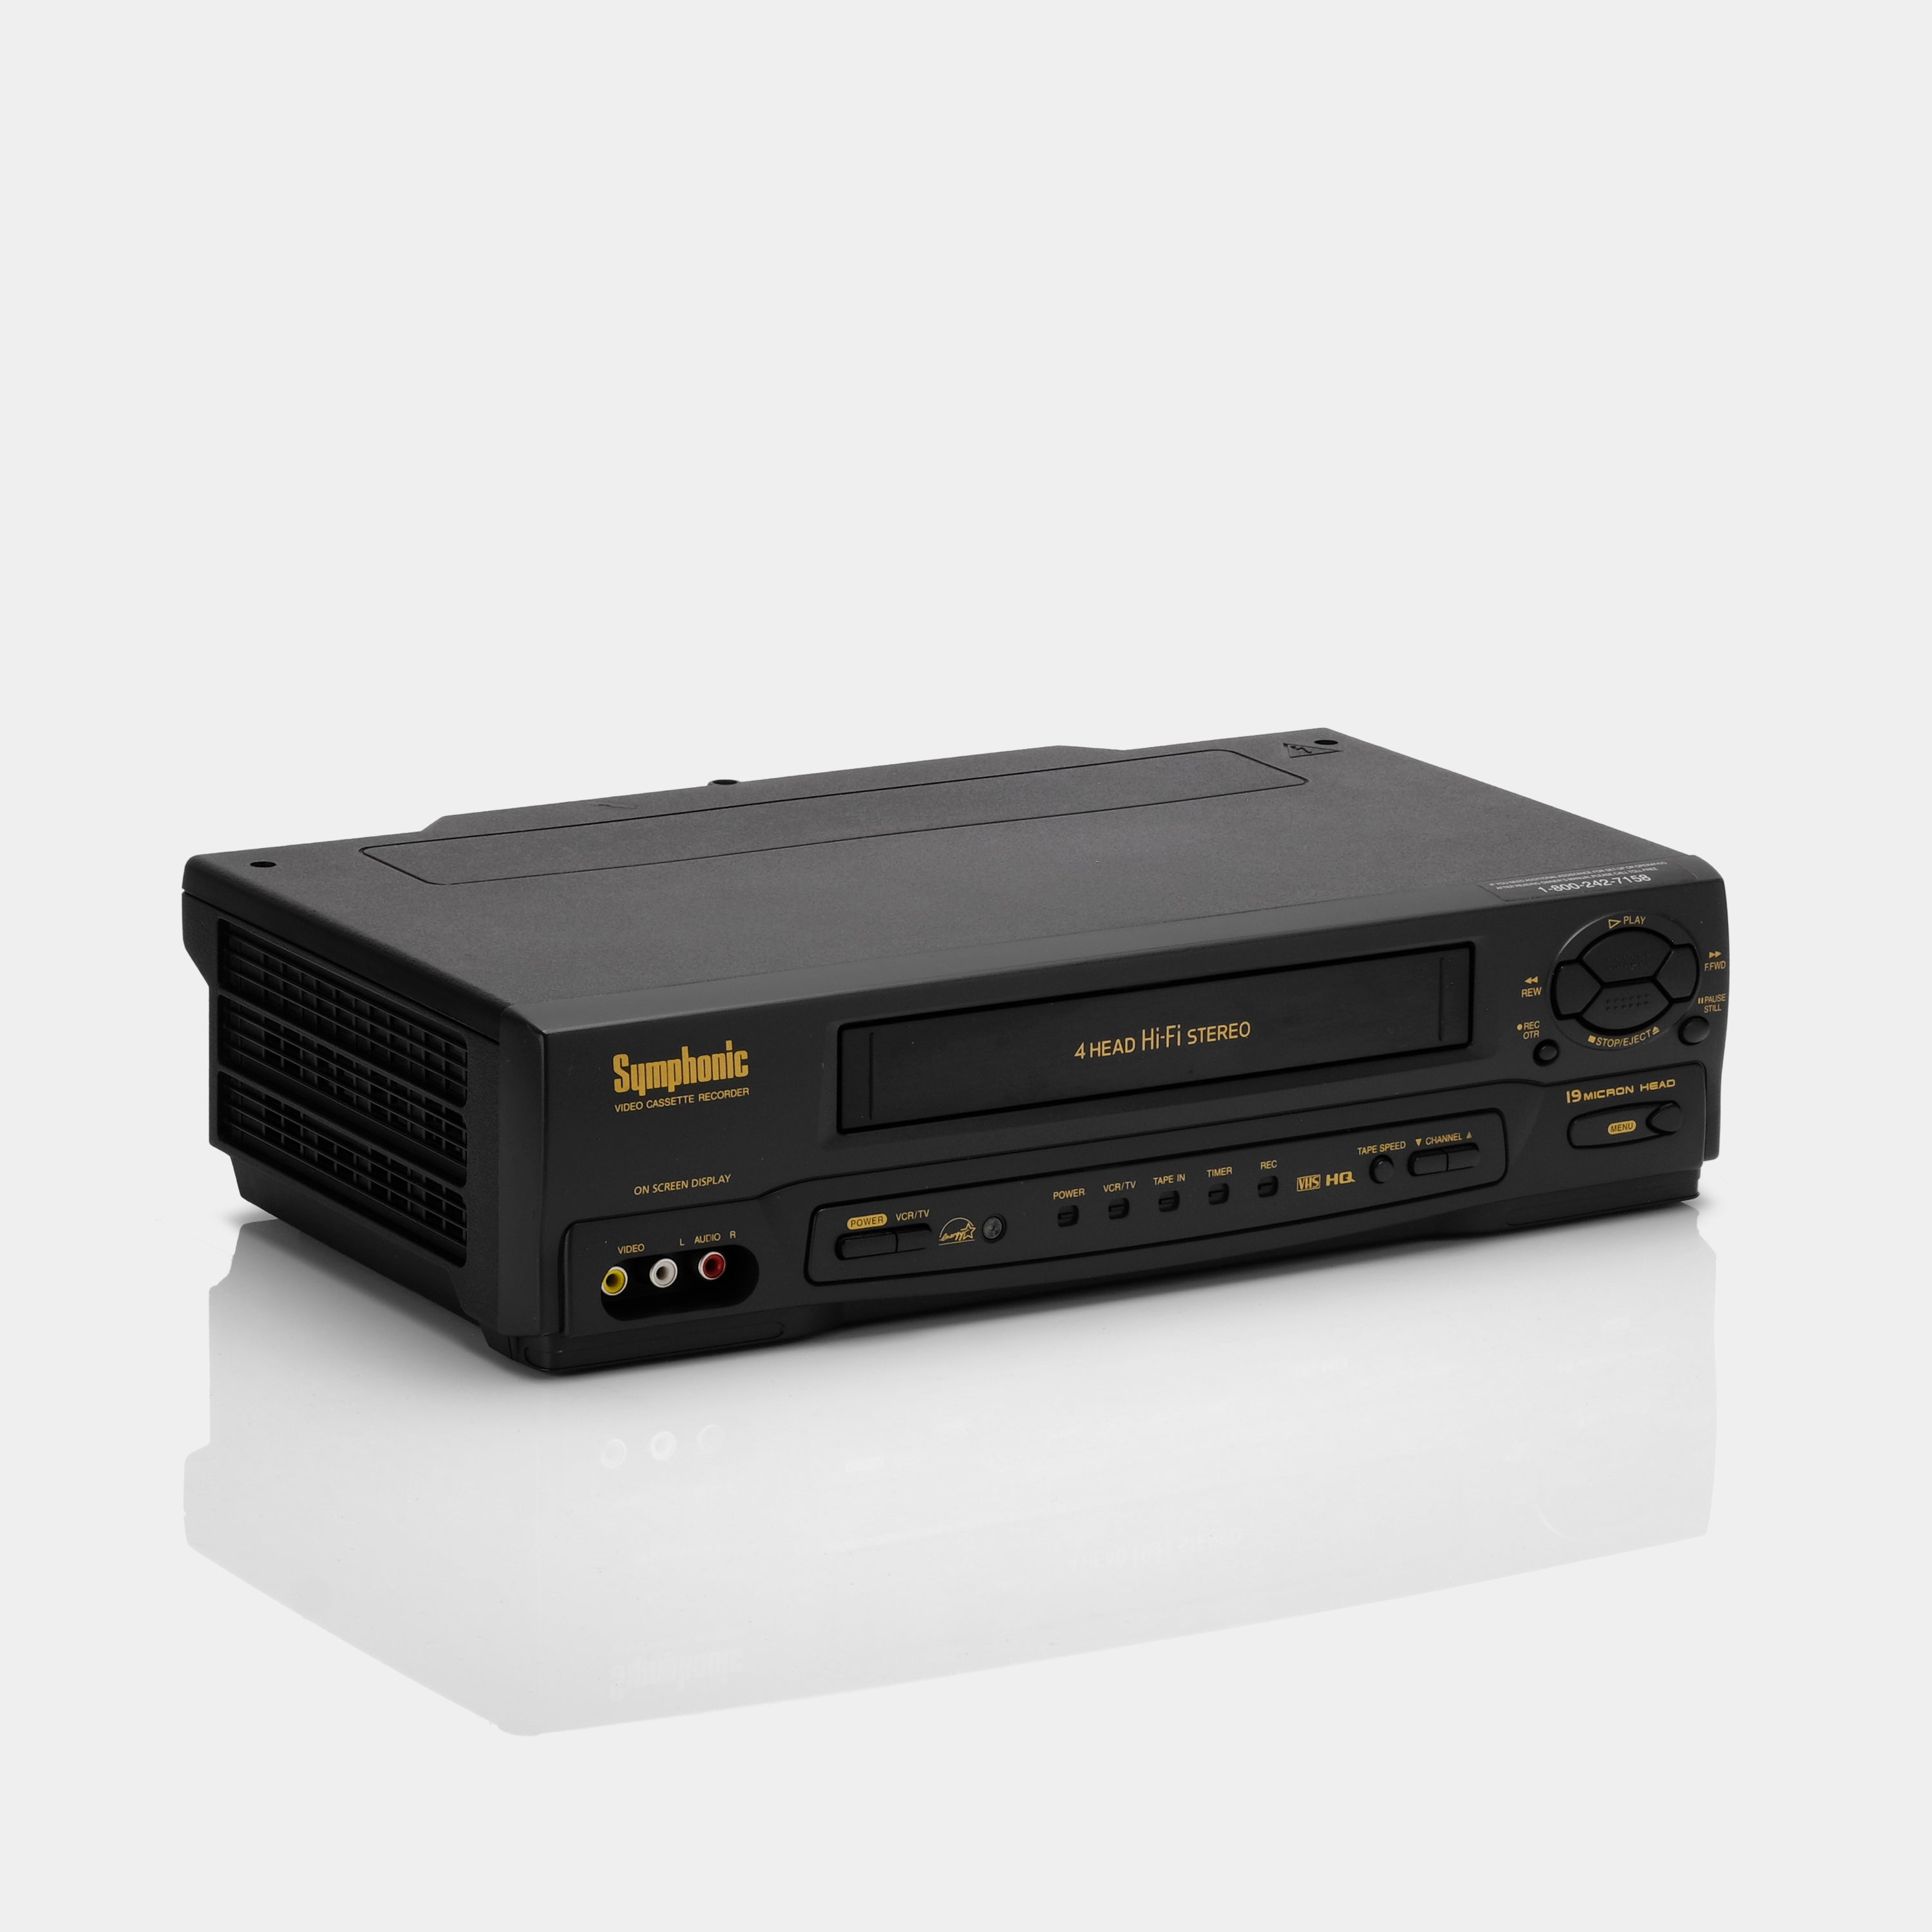 Symphonic VR-701 VCR VHS Player